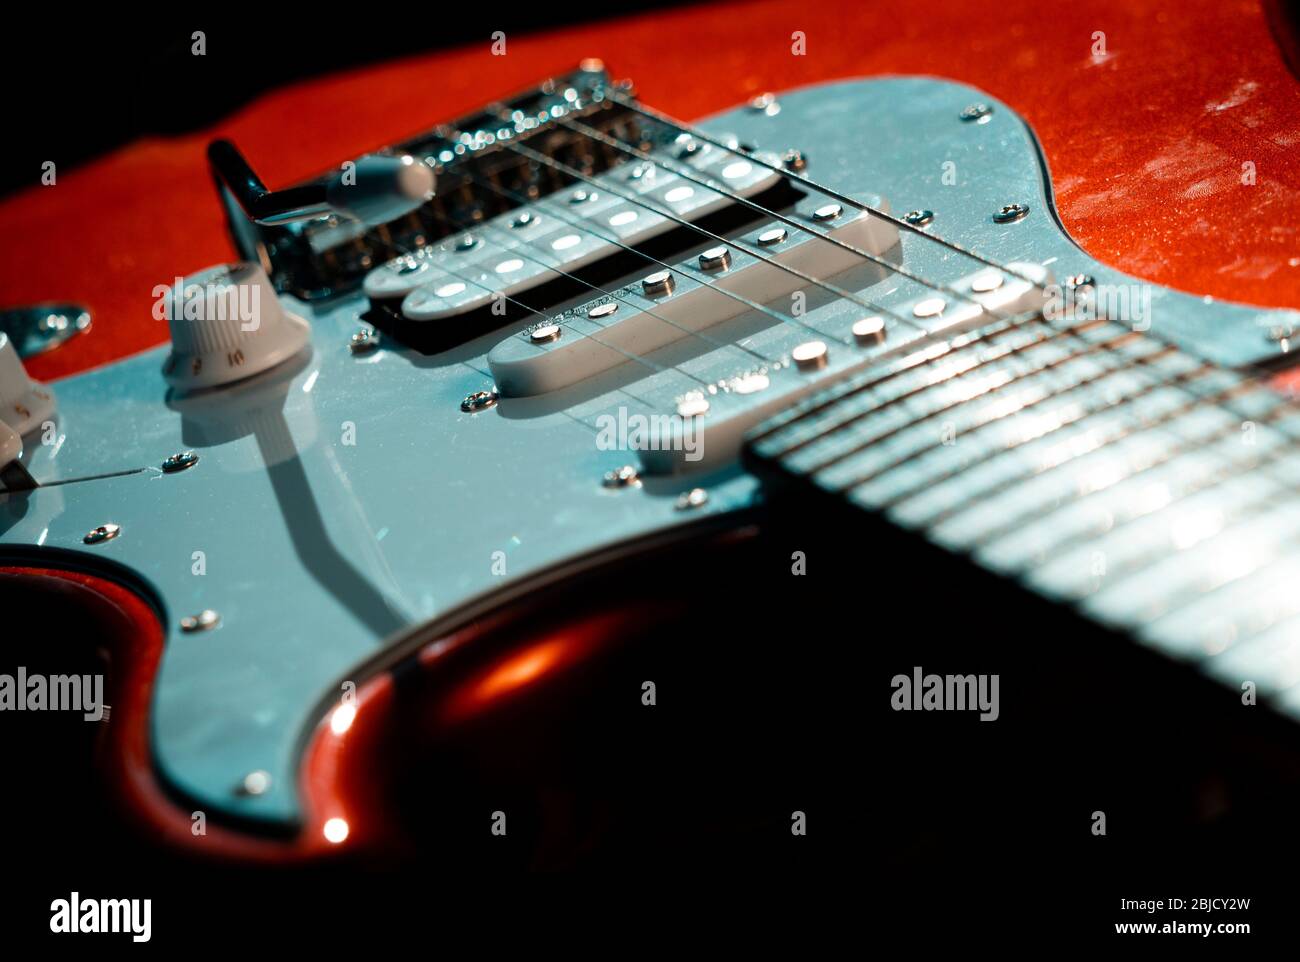 Dettaglio di una chitarra elettrica Red Stratocaster Design Copy, le chitarre elettriche furono inventate per la prima volta intorno agli anni '30 Foto Stock